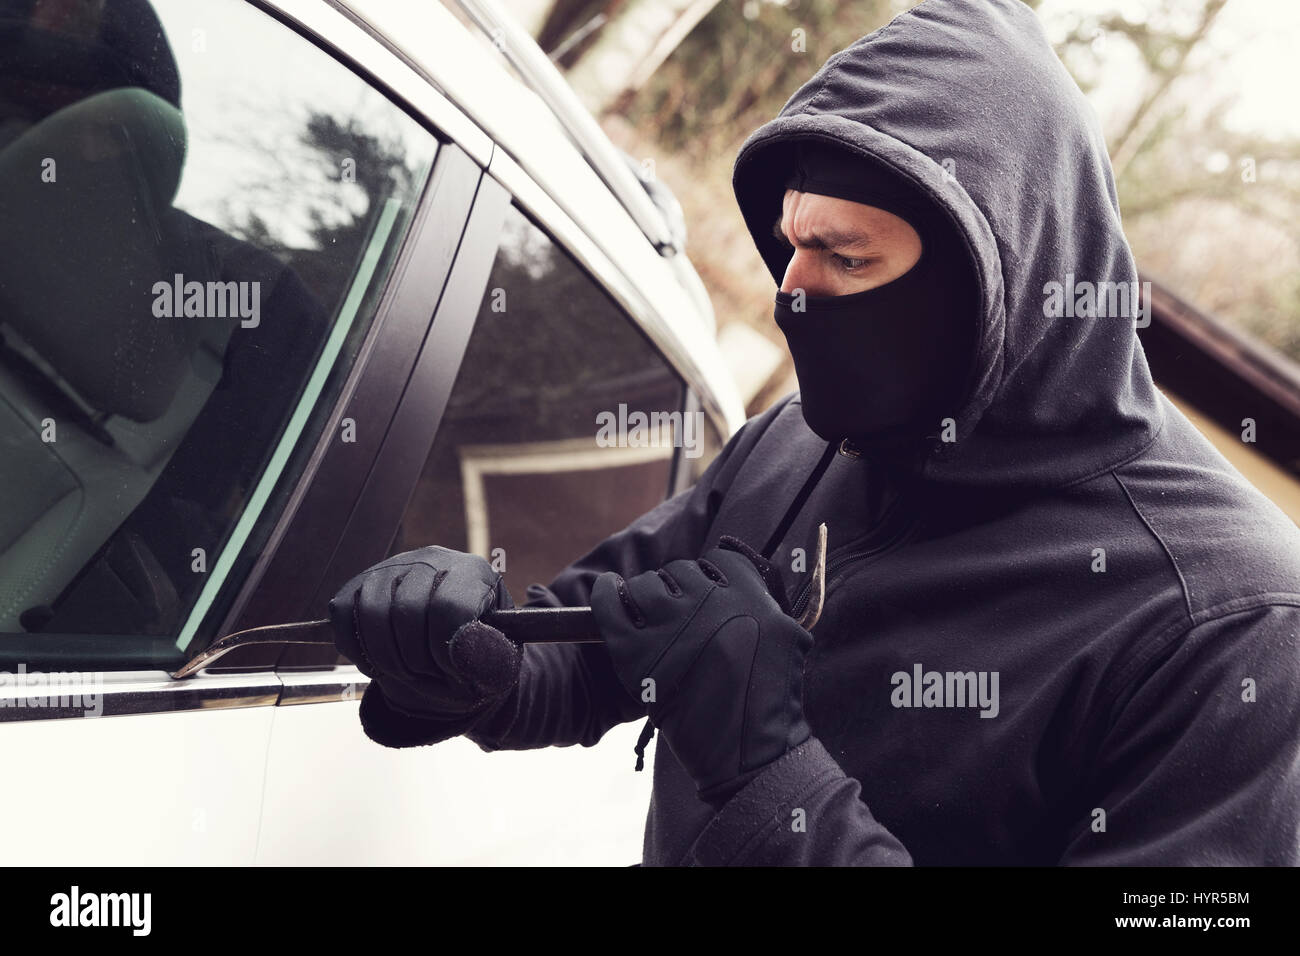 Los robos de coches - ladrón que intenta penetrar en el vehículo Foto de stock